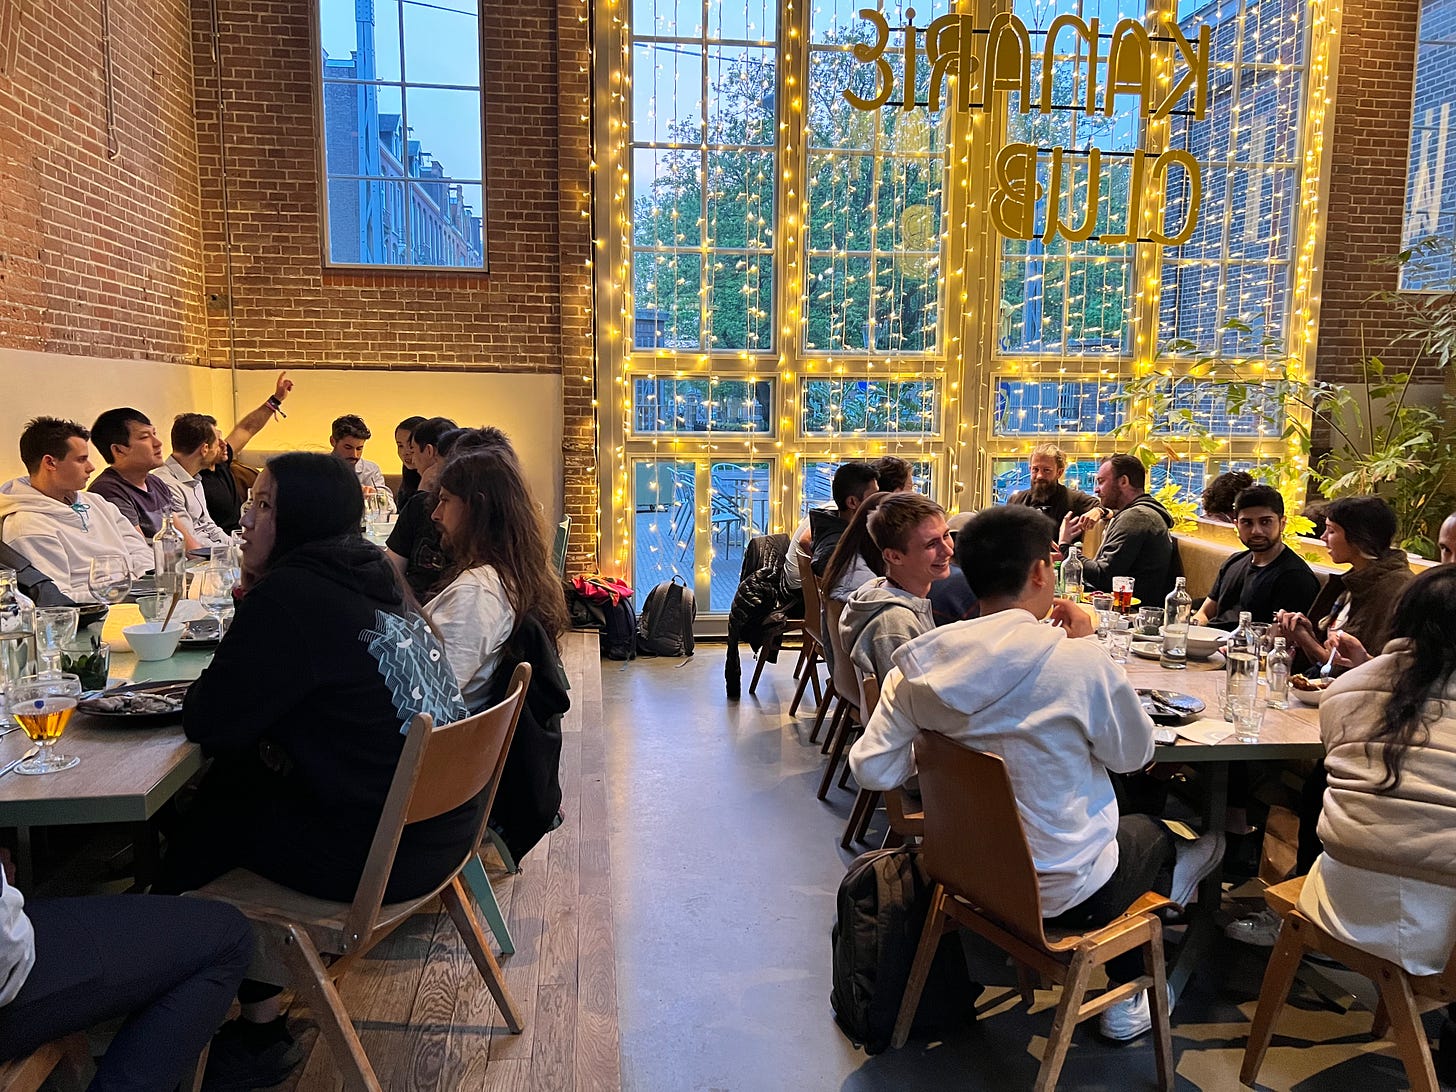 Zeitgeist & friends dinner at Devconnect in Amsterdam.